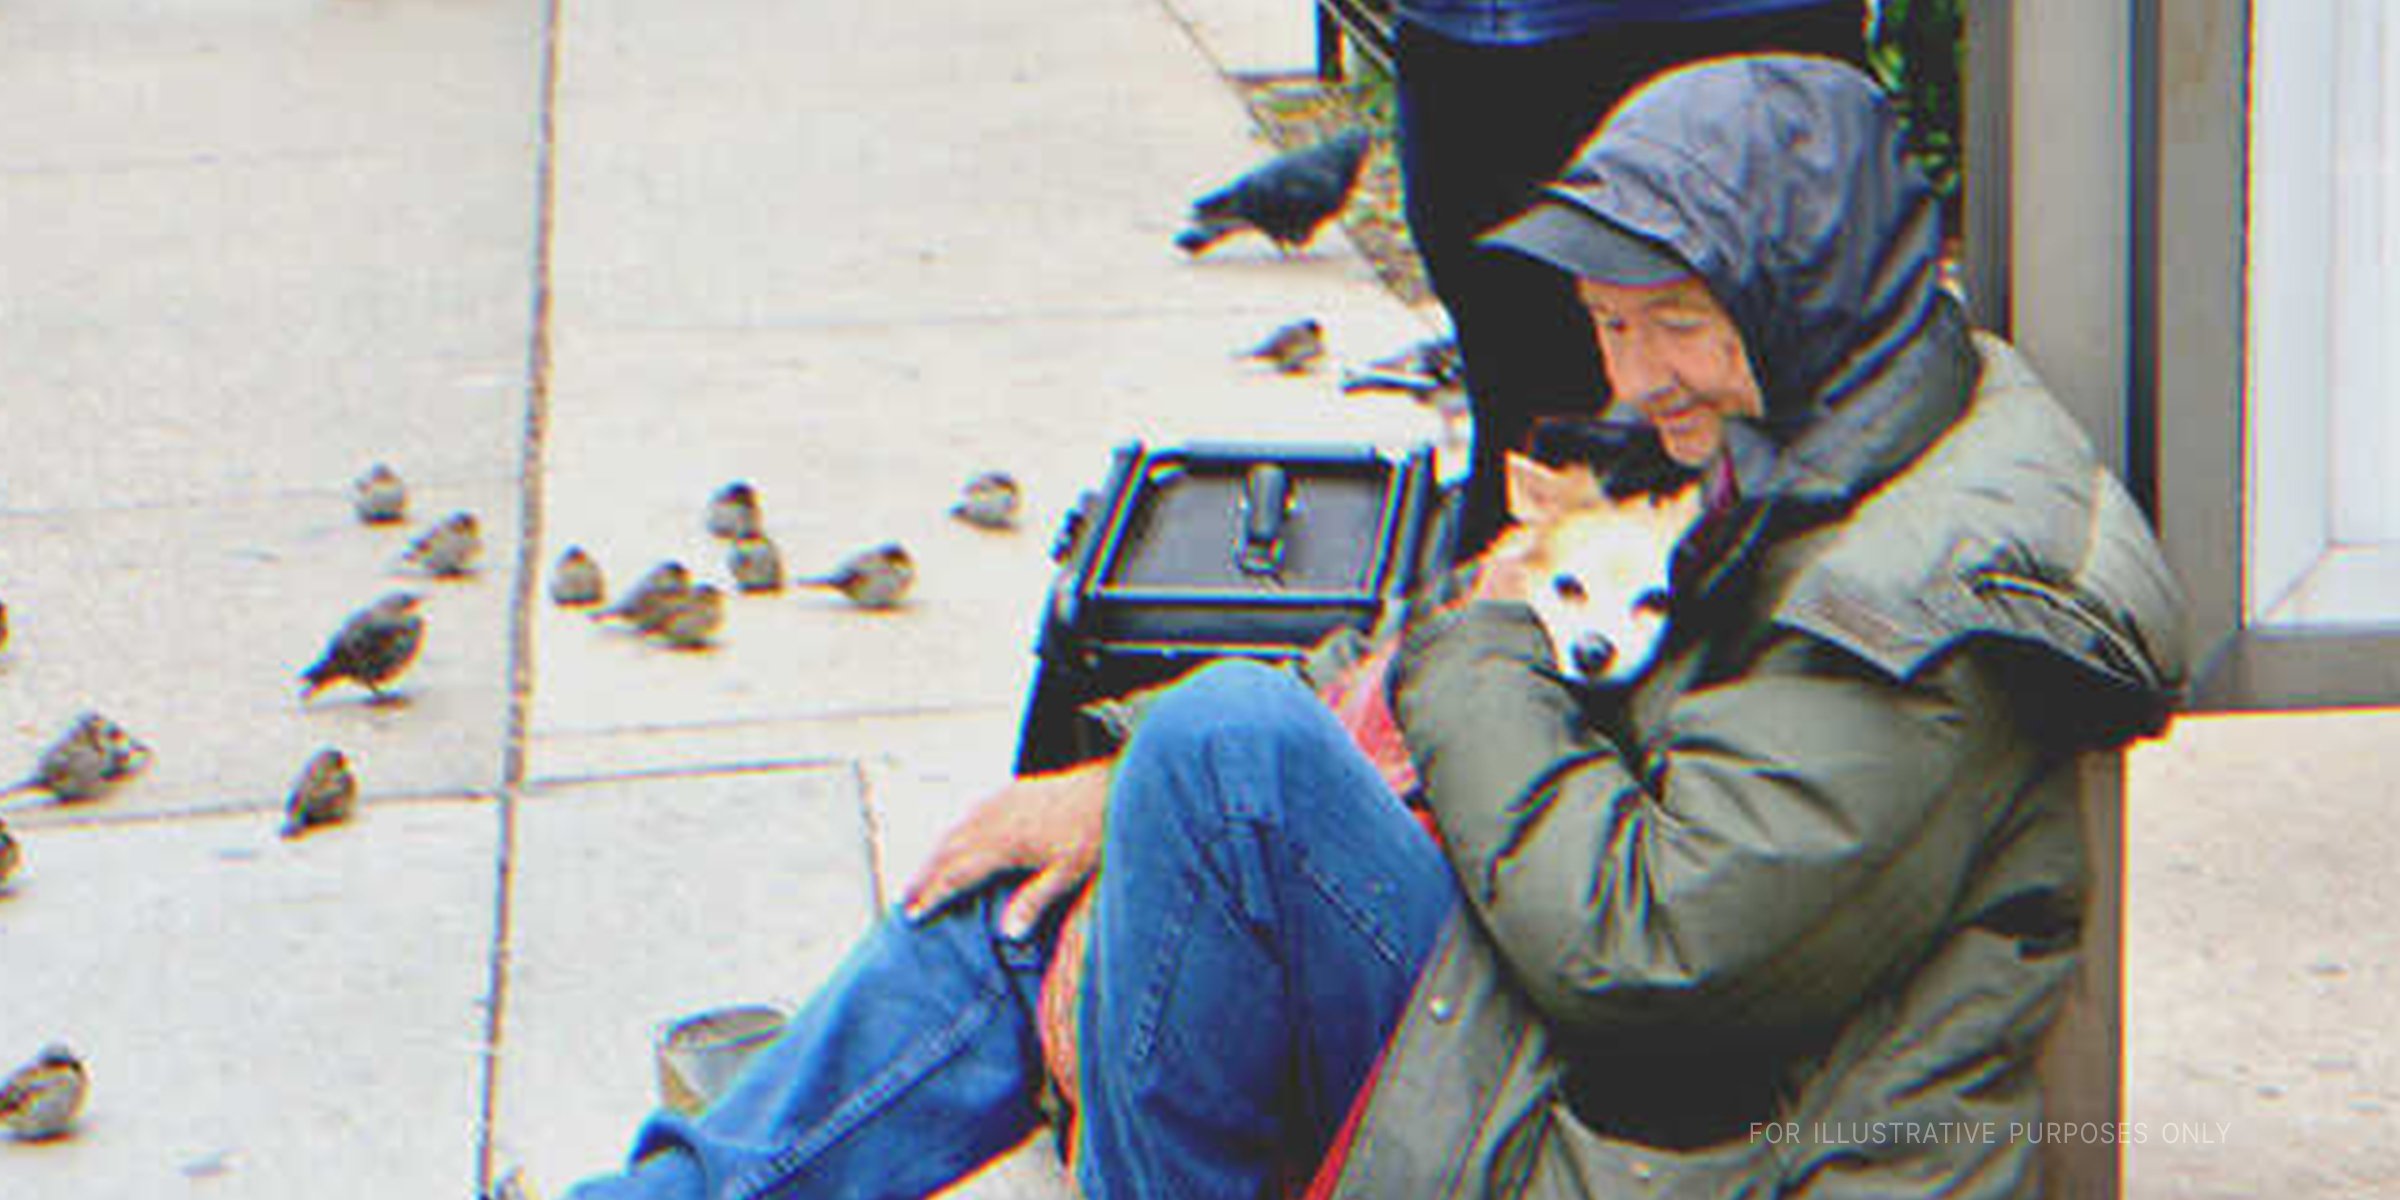 Beggar hugs his pet dog | Source: Shutterstock